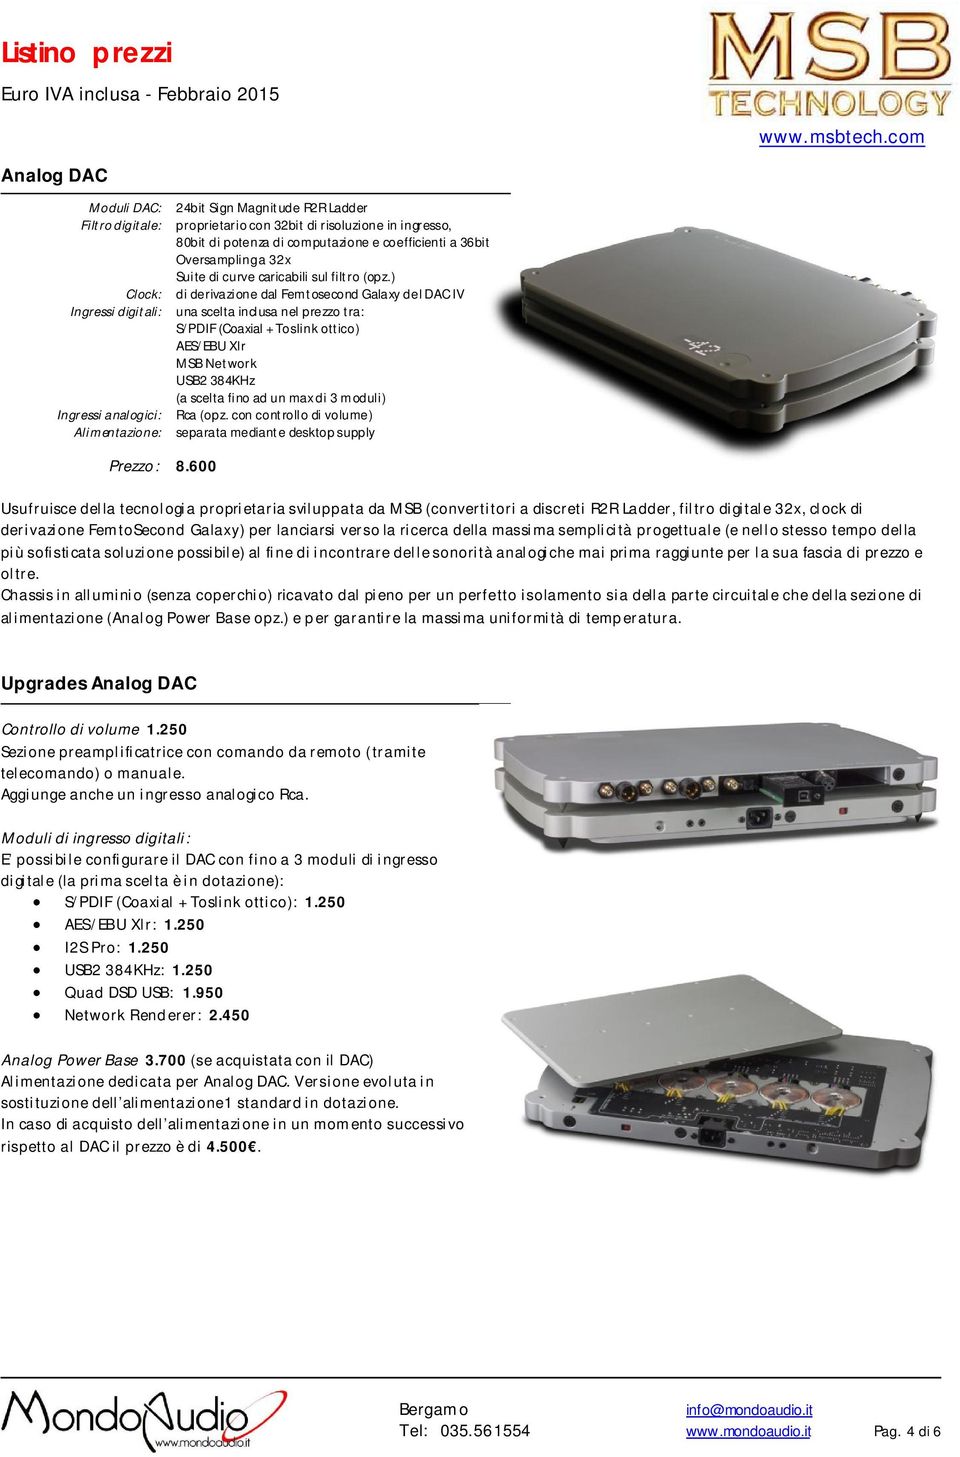 ) di derivazione dal Femtosecond Galaxy del DAC IV una scelta inclusa nel prezzo tra: S/PDIF (Coaxial + Toslink ottico) AES/EBU Xlr MSB Network USB2 384KHz (a scelta fino ad un max di 3 moduli) Rca